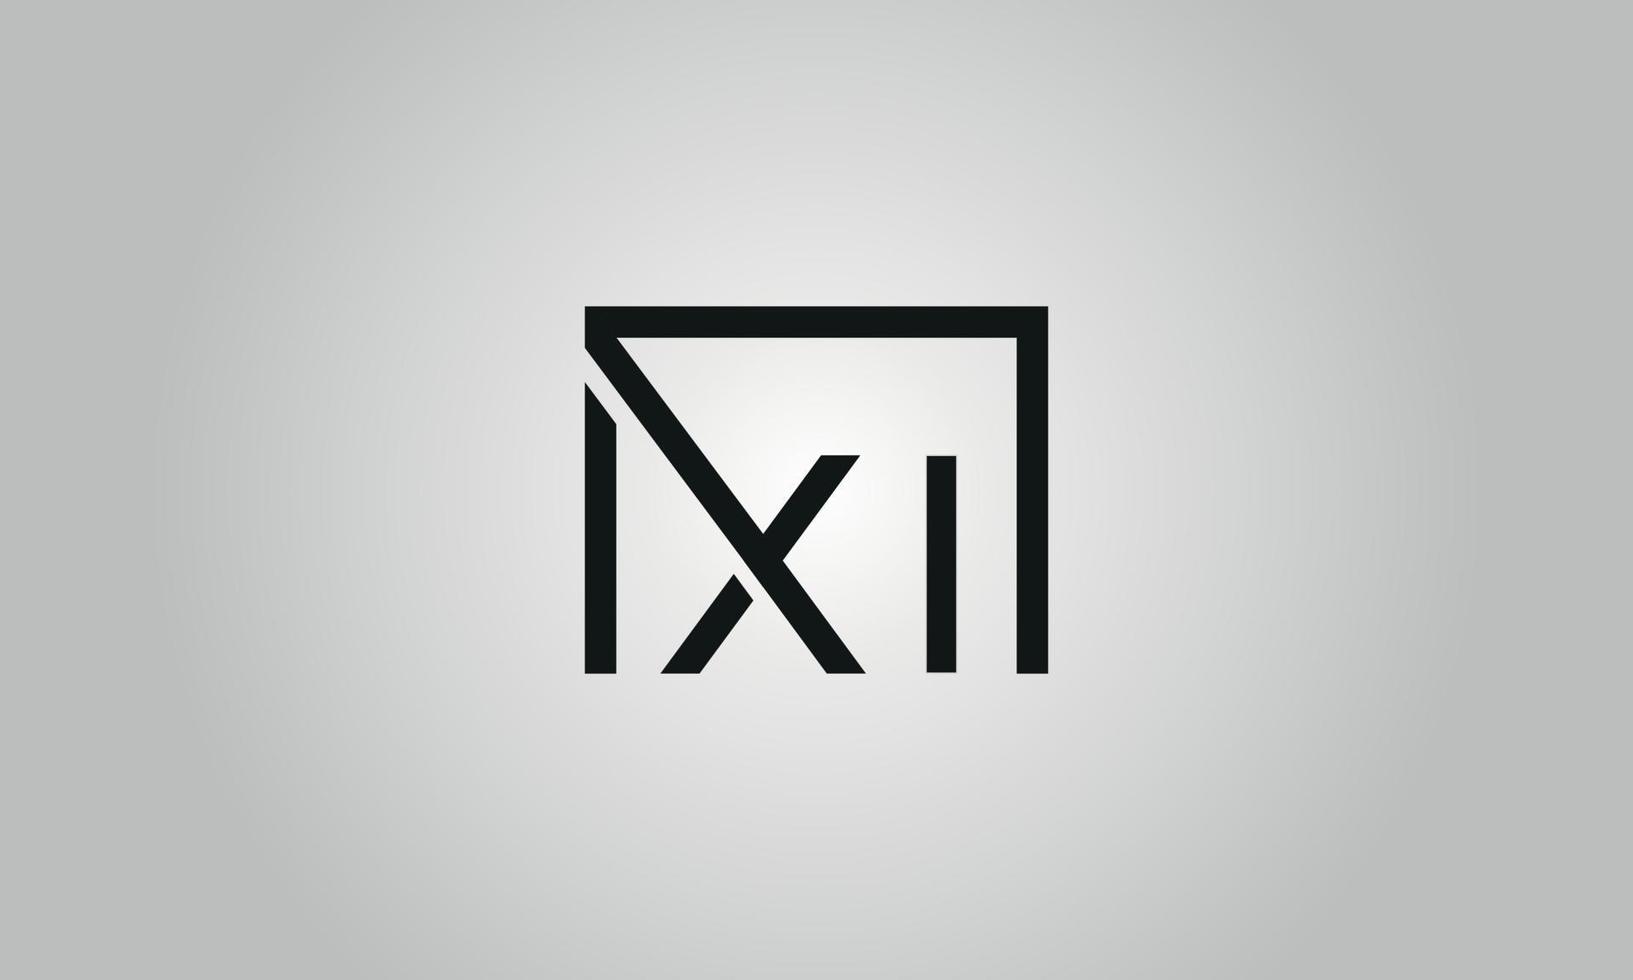 design de logotipo letra xi. xi logotipo com forma quadrada em cores pretas modelo de vetor livre.